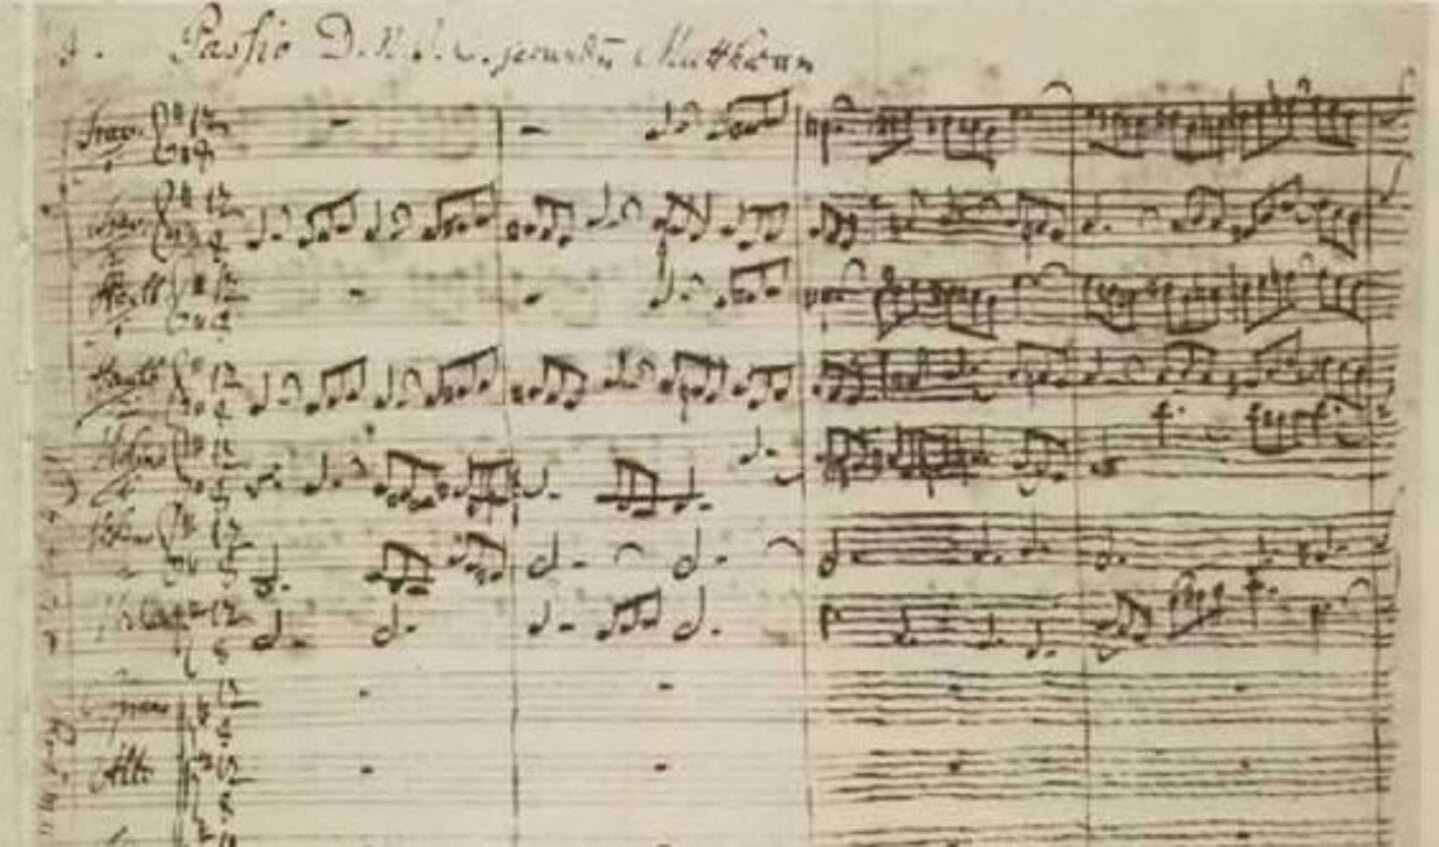 Het begin van de Matthäus-Passion in Bachs handschrift.